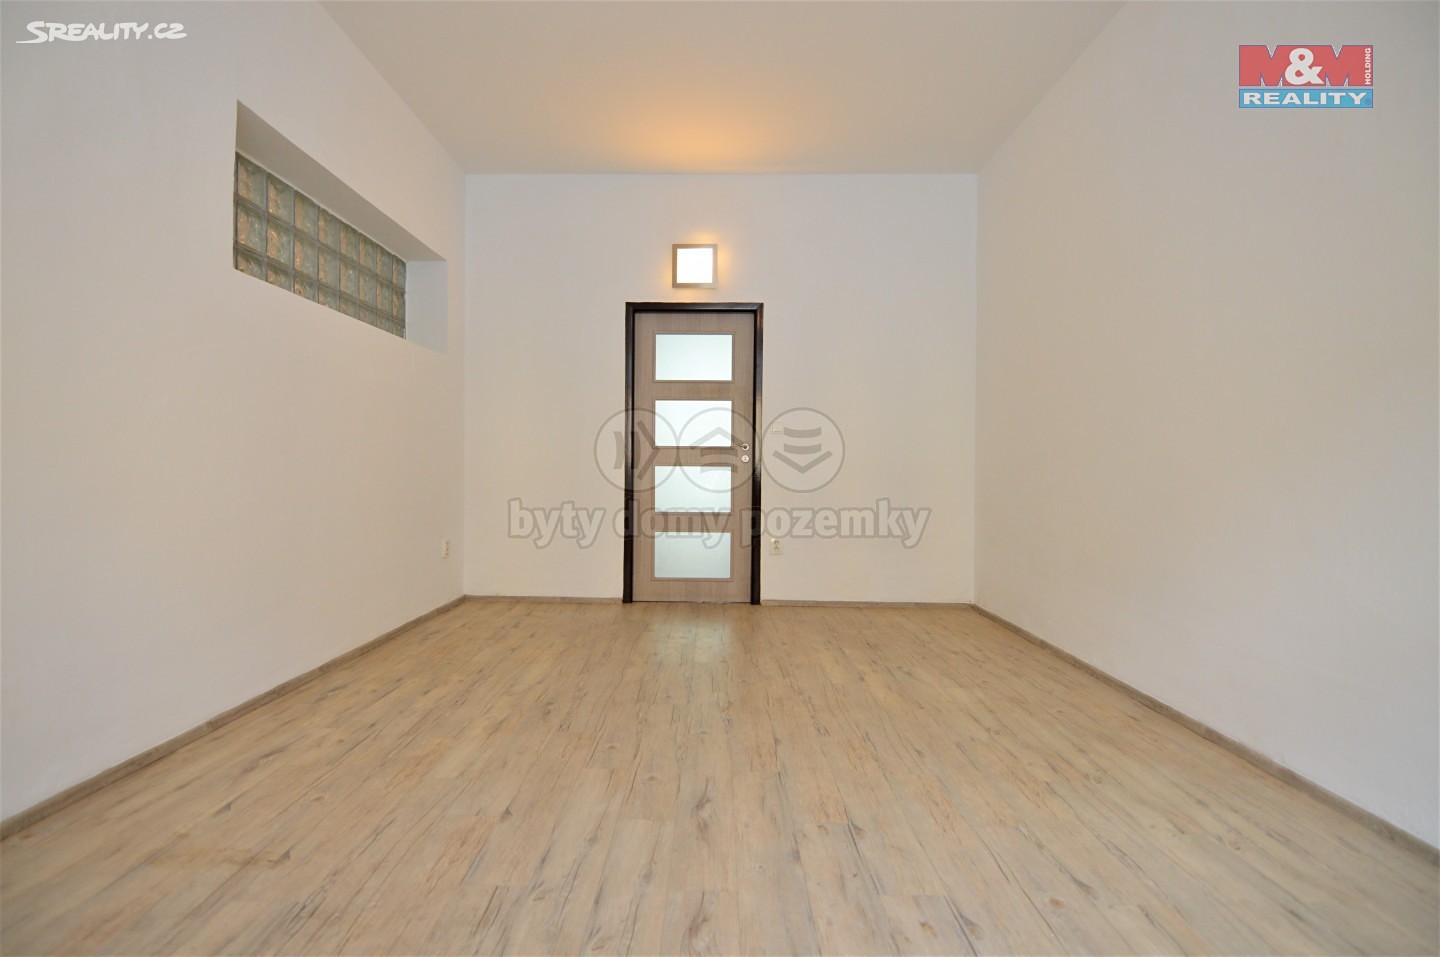 Pronájem bytu 1+1 58 m², Svinarská, Hradec Králové - Slatina